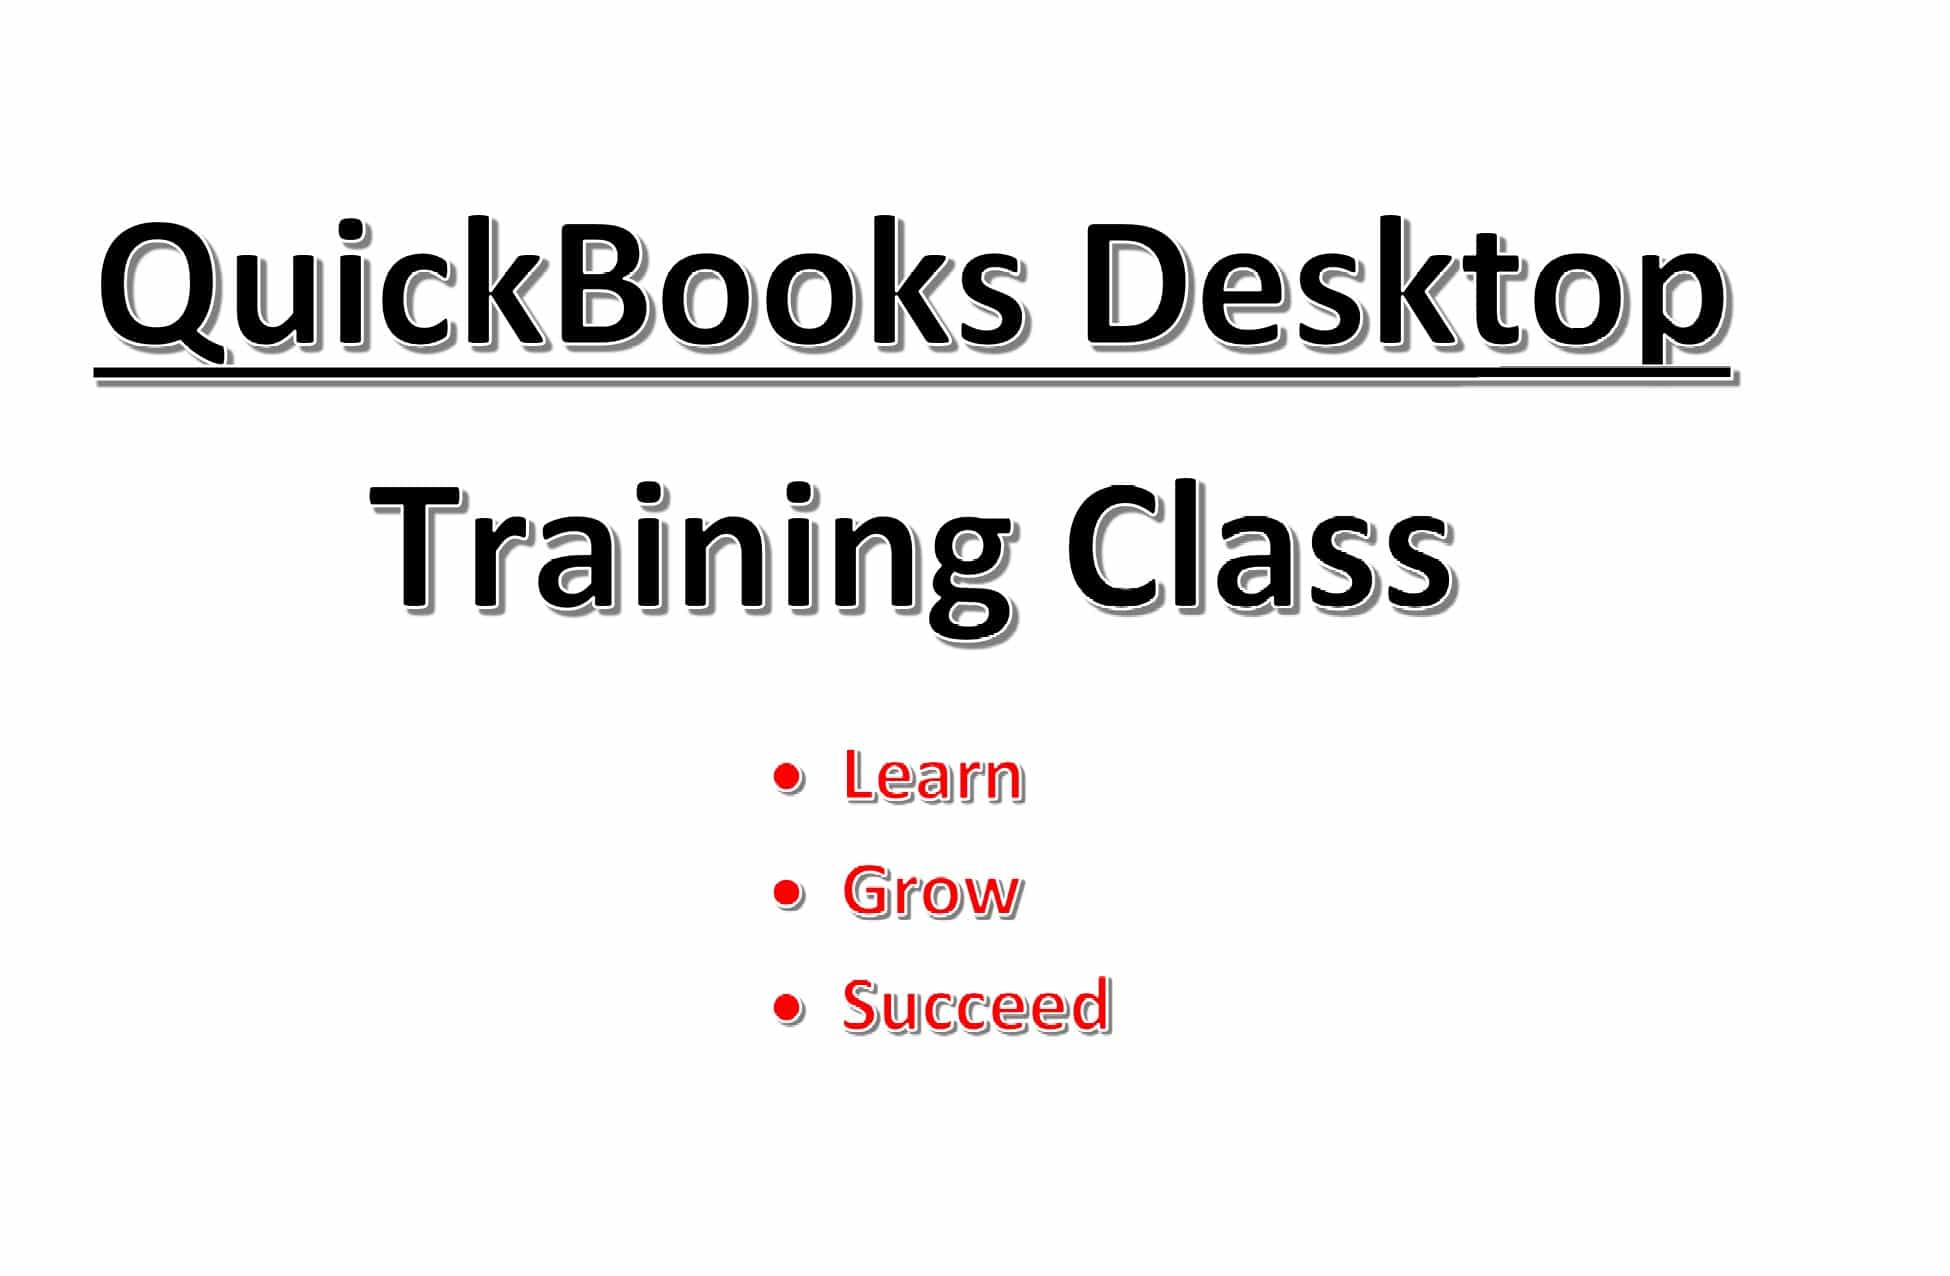 QuickBooks Training Classes learn QuickBooks with QuickBoosk Training classes QuickBooks enterprise, QuickBooks Premier, QuickBooks Pro and QuickBooks Online QuickBooks training classes, QuickBooks training class, QuickBooks training, QuickBooks class, QuickBooks classes, learn QuickBooks, QuickBooks training courses, QuickBooks training course, QuickBooks class, QuickBooks courses,